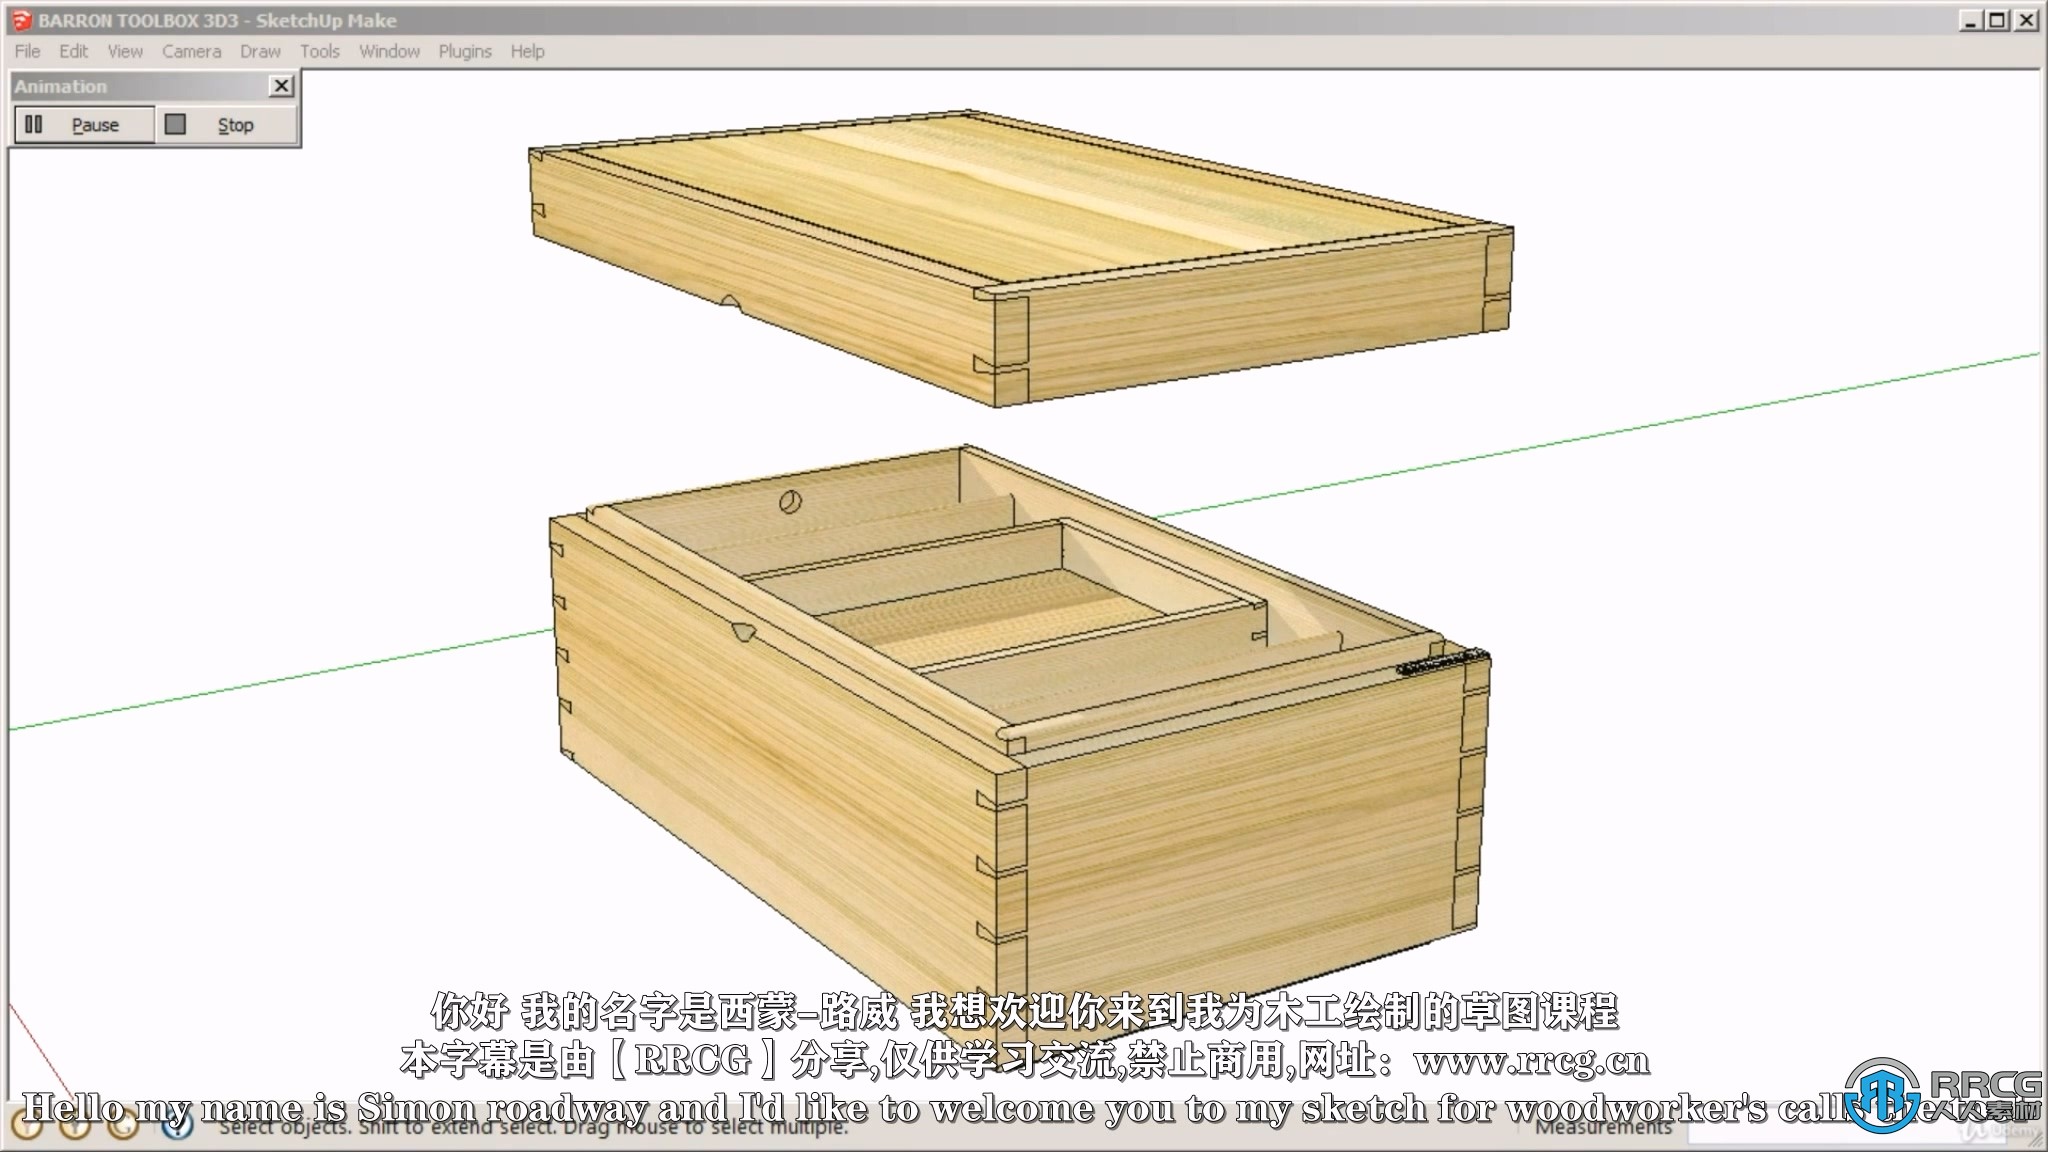 【中文字幕】Sketchup土木3D设计技术训练视频教程